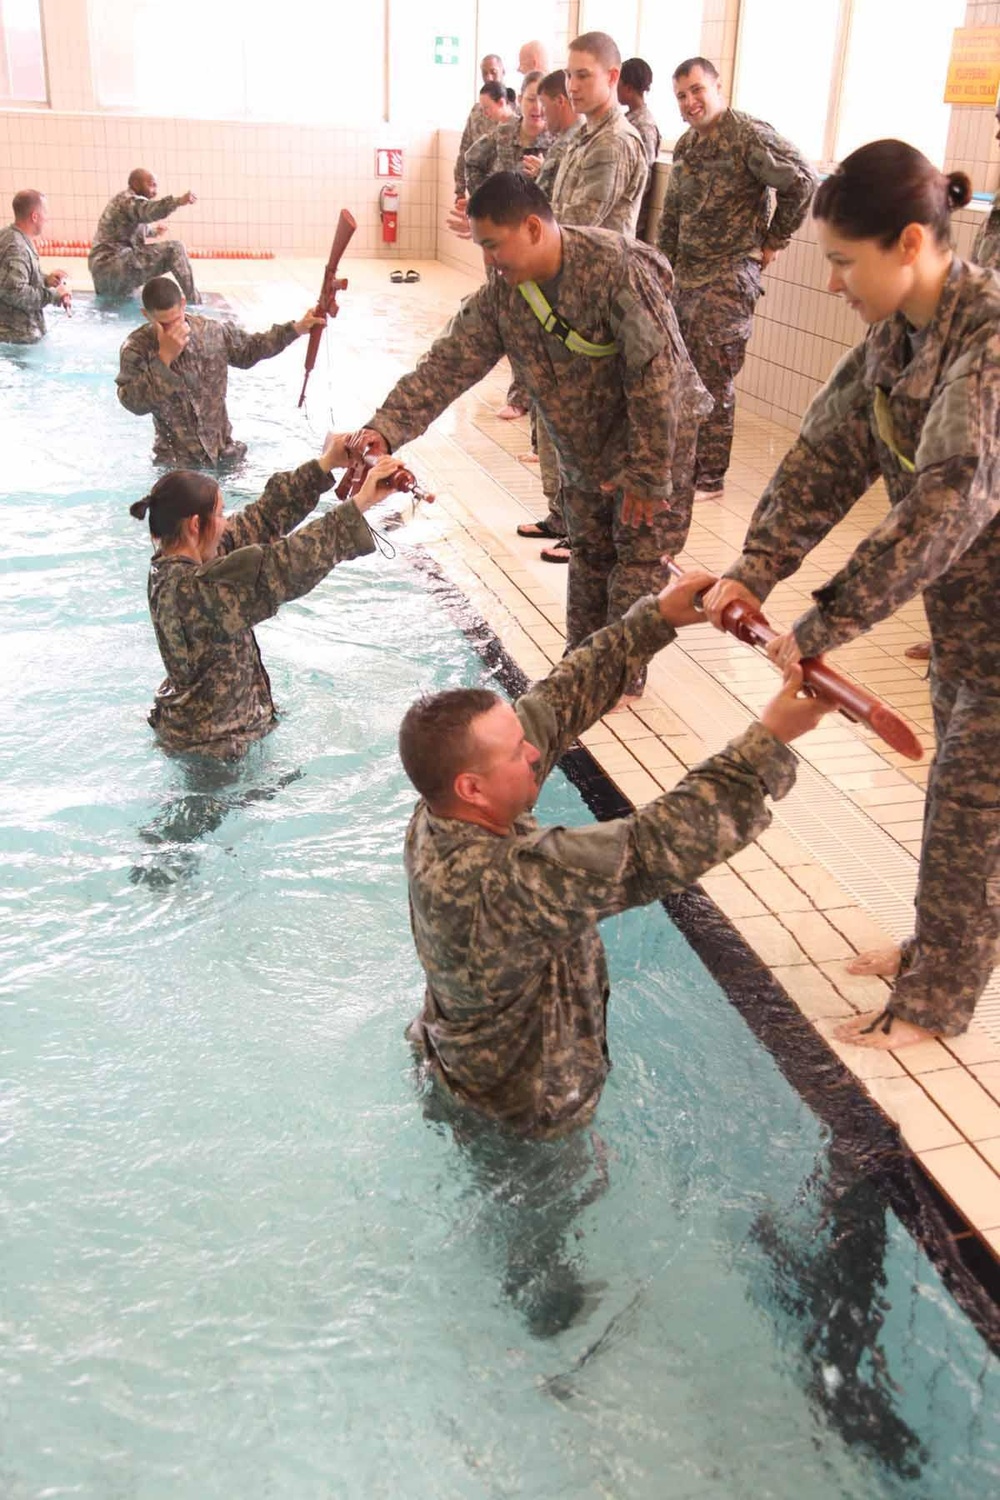 703rd BSB soldiers practice water survival